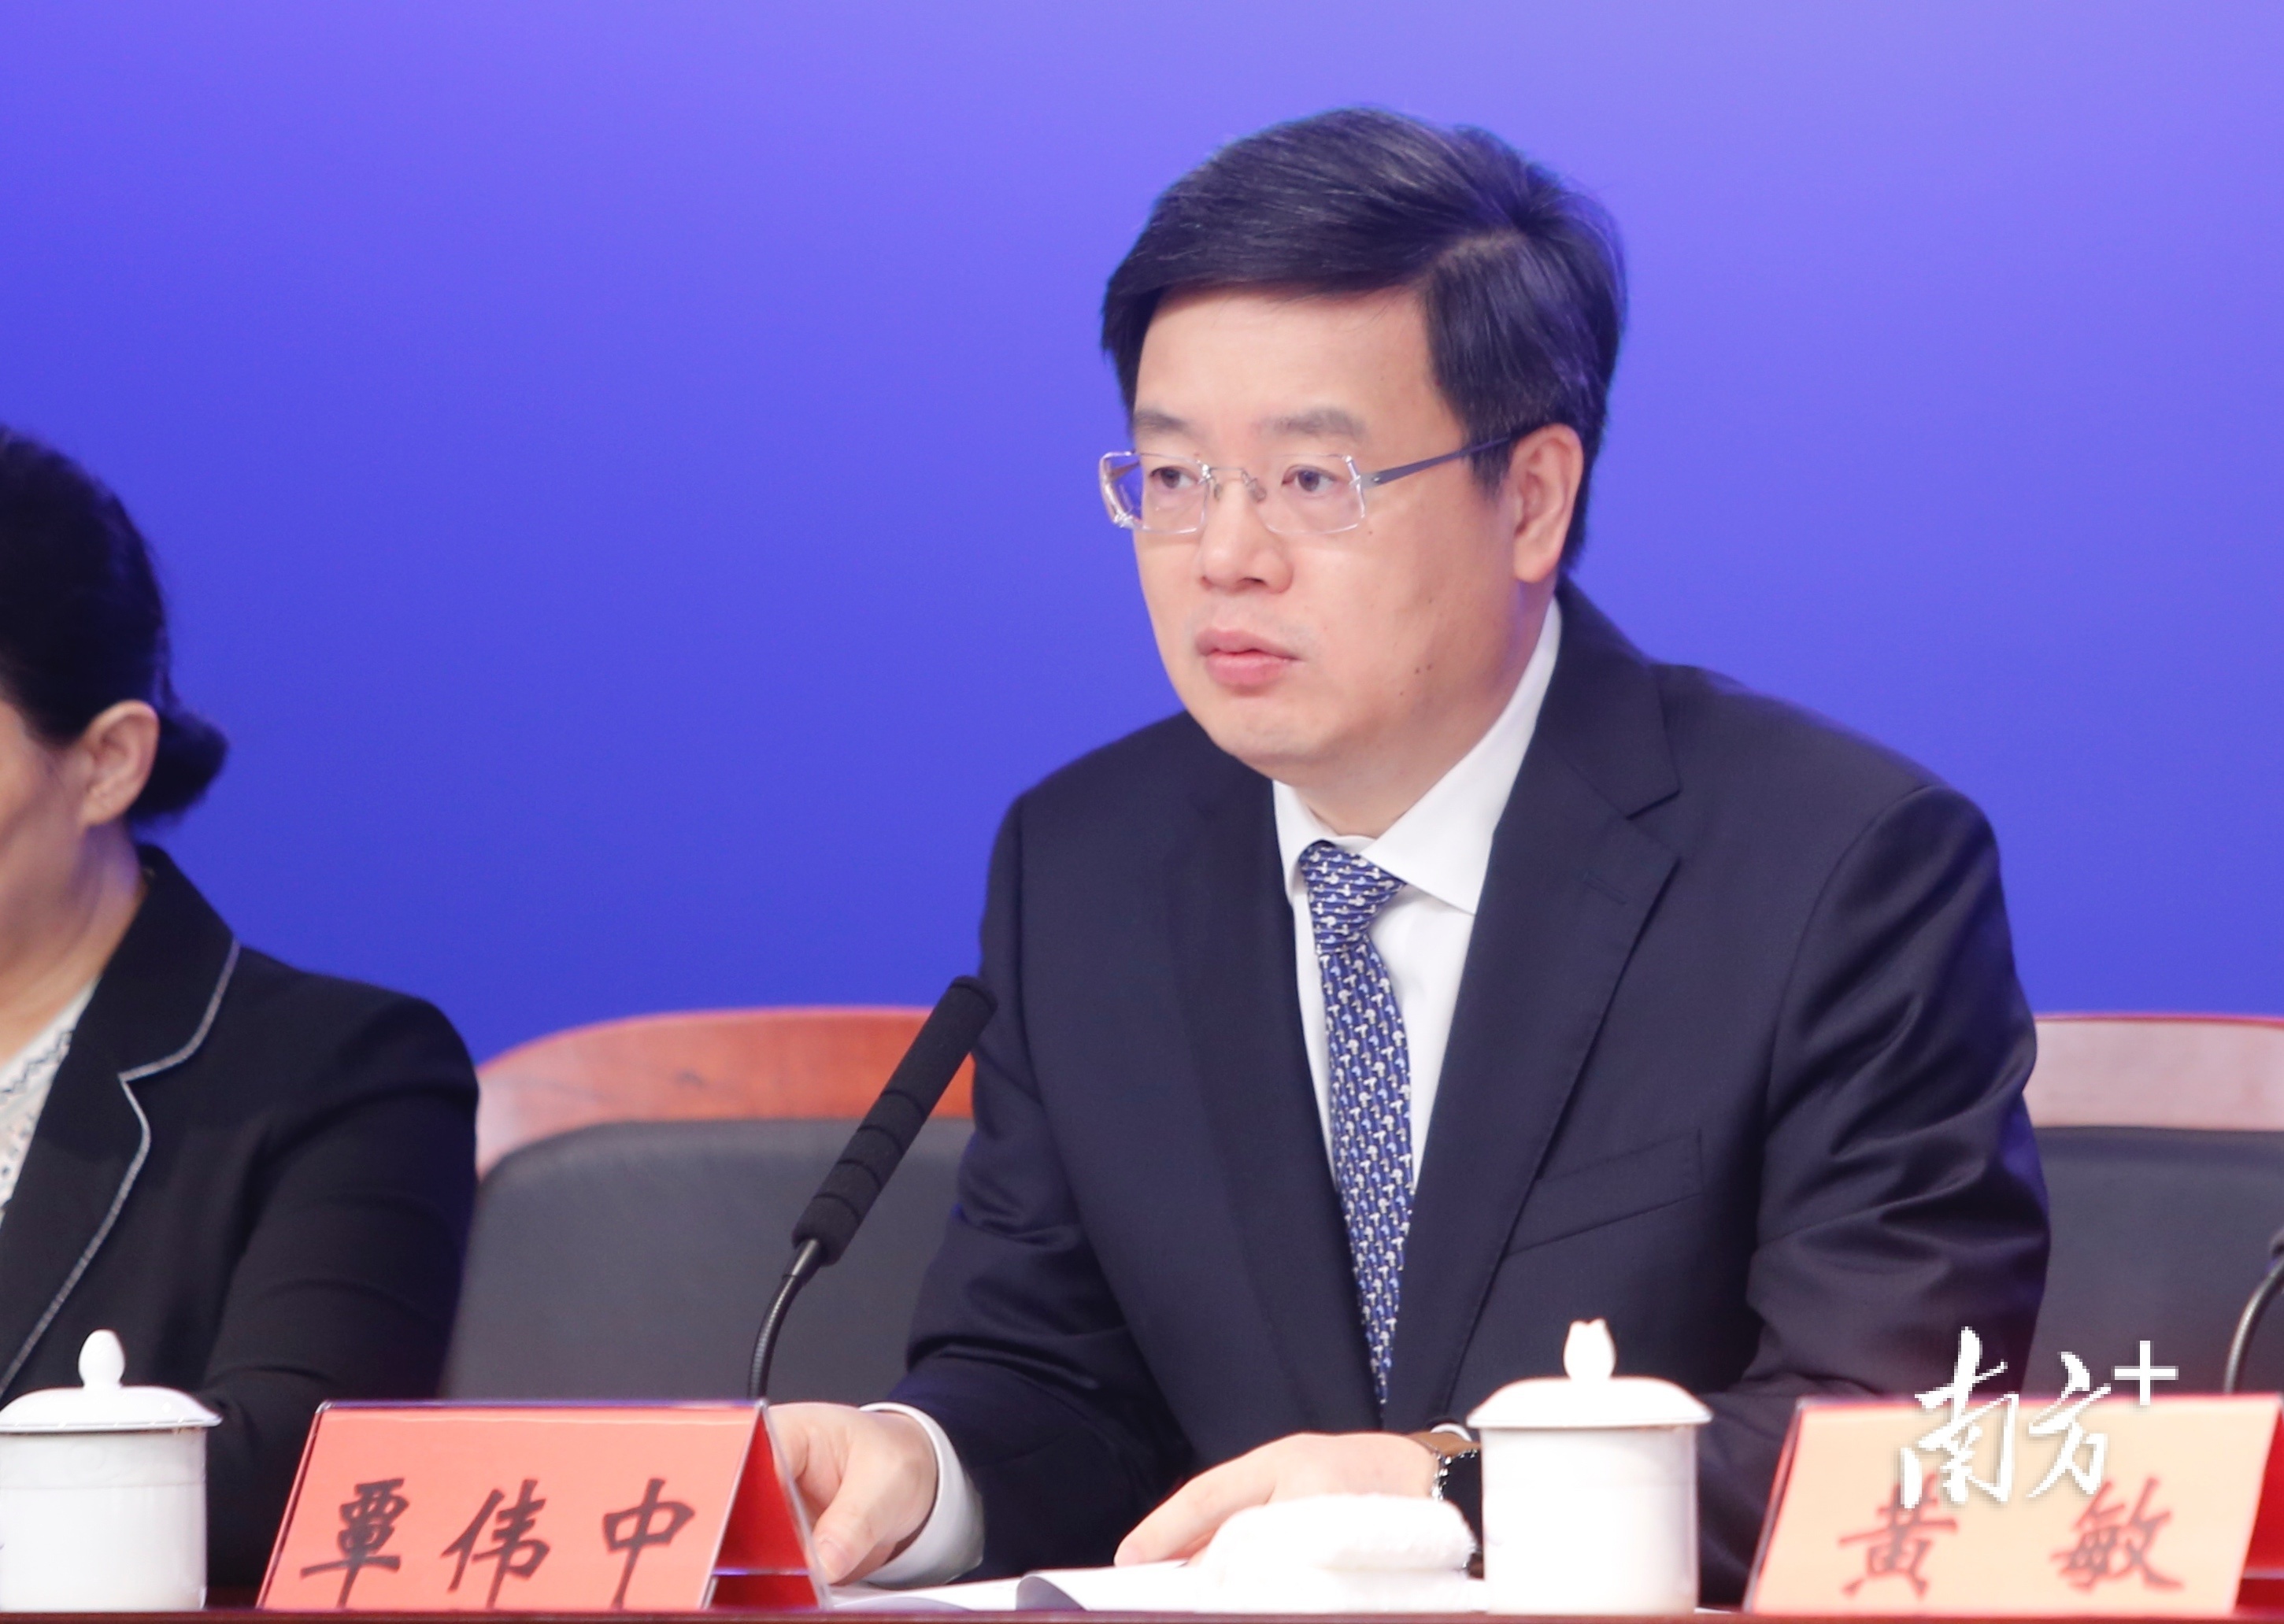 深圳市长覃伟中:尽快推动支持政策覆盖前海扩区后的全部区域